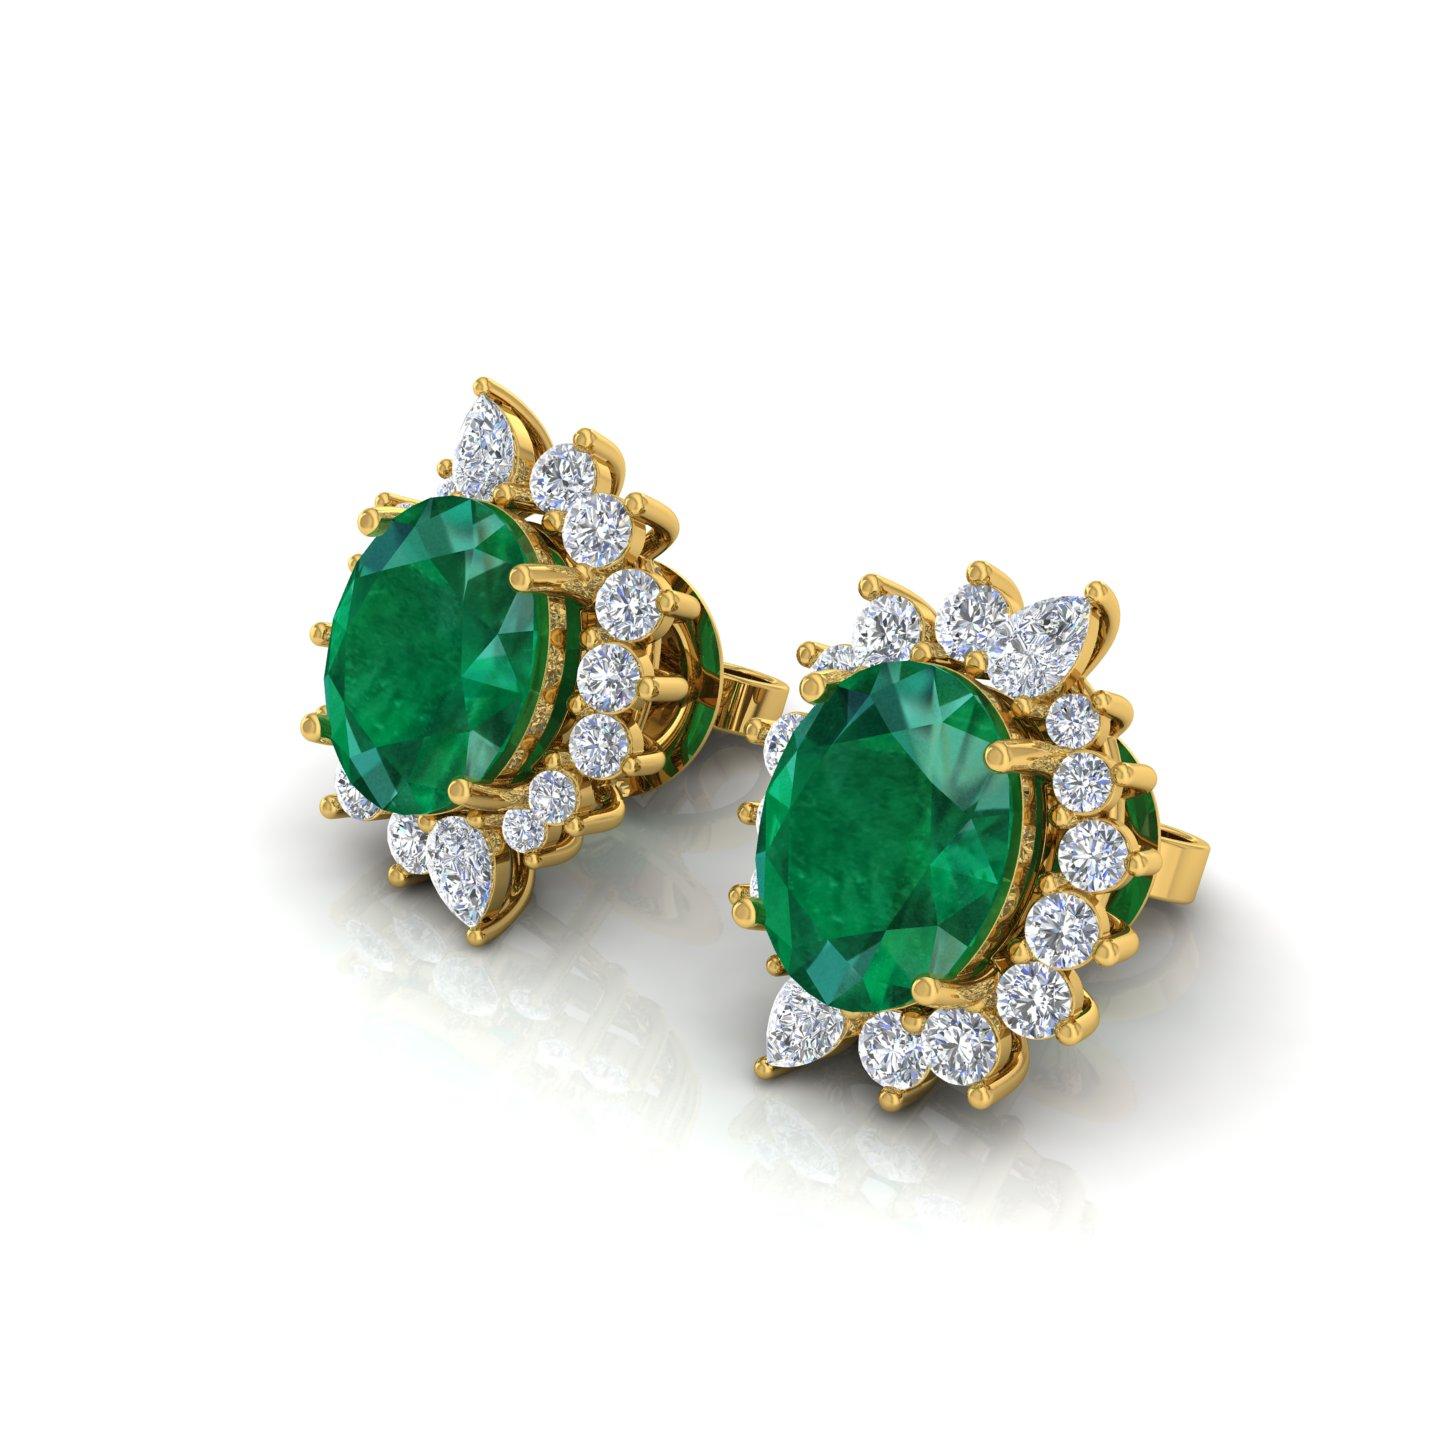 Oval Cut Oval Zambian Emerald Gemstone Earrings Diamond 18 Karat Yellow Gold Fine Jewelry For Sale